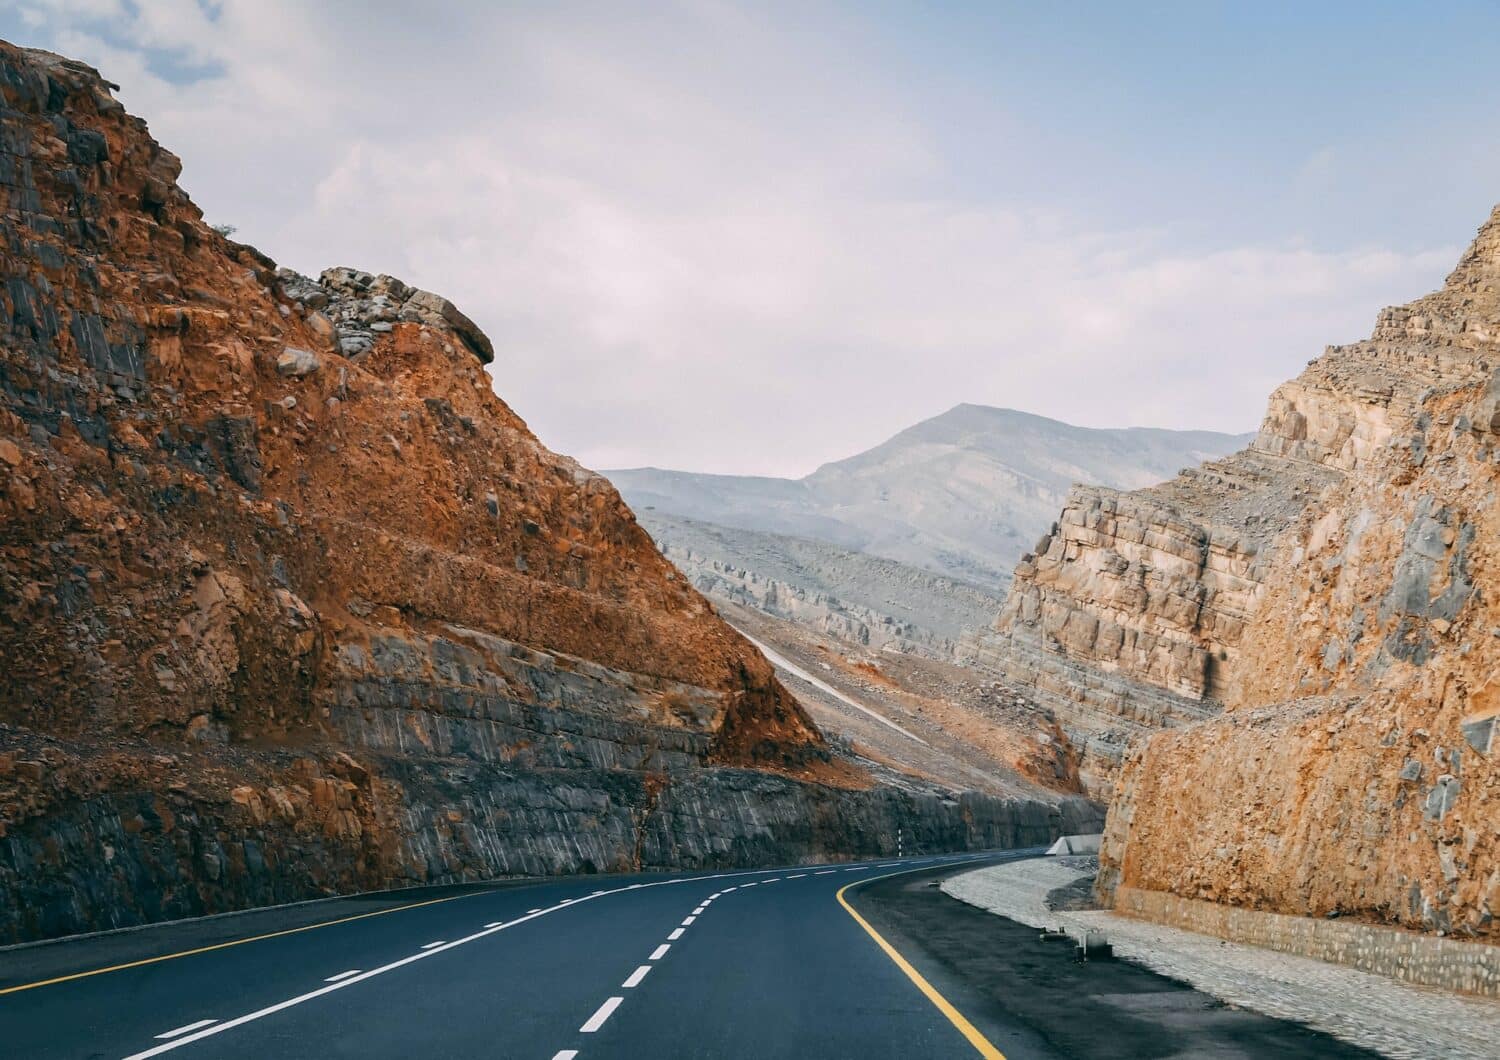 Uma estrada cortando montanhas rochosas em tons de cinza, laranja e bege, esse local é conhecido como Jebel Jais em Ras Al Khaimah